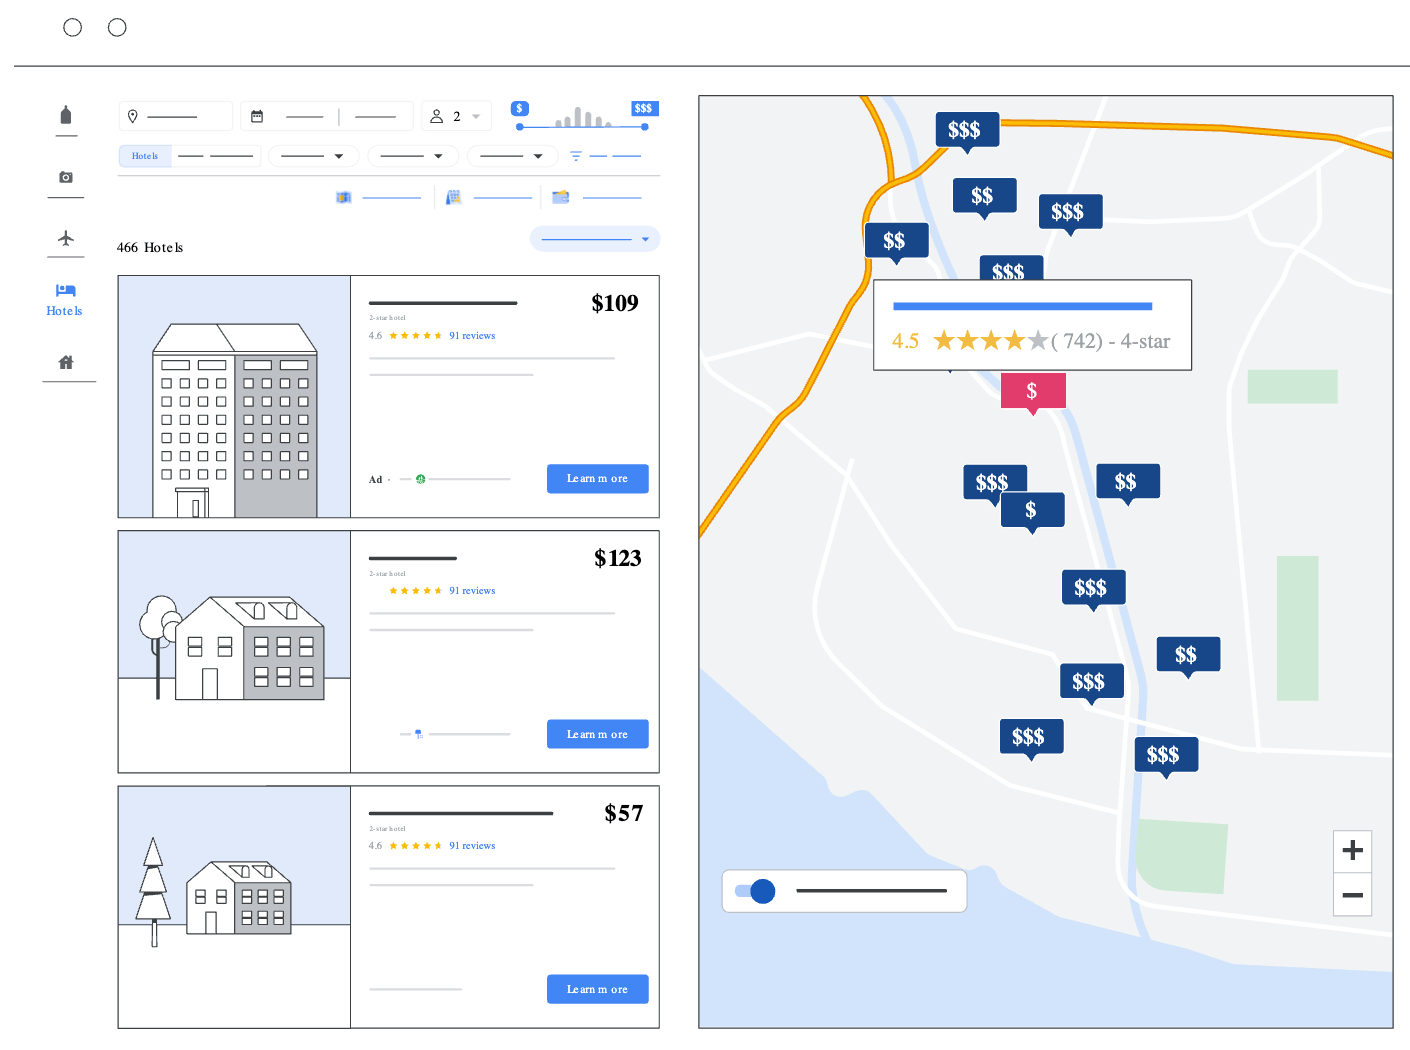 Как выглядят рекламные объявлений отелей в Google Картах